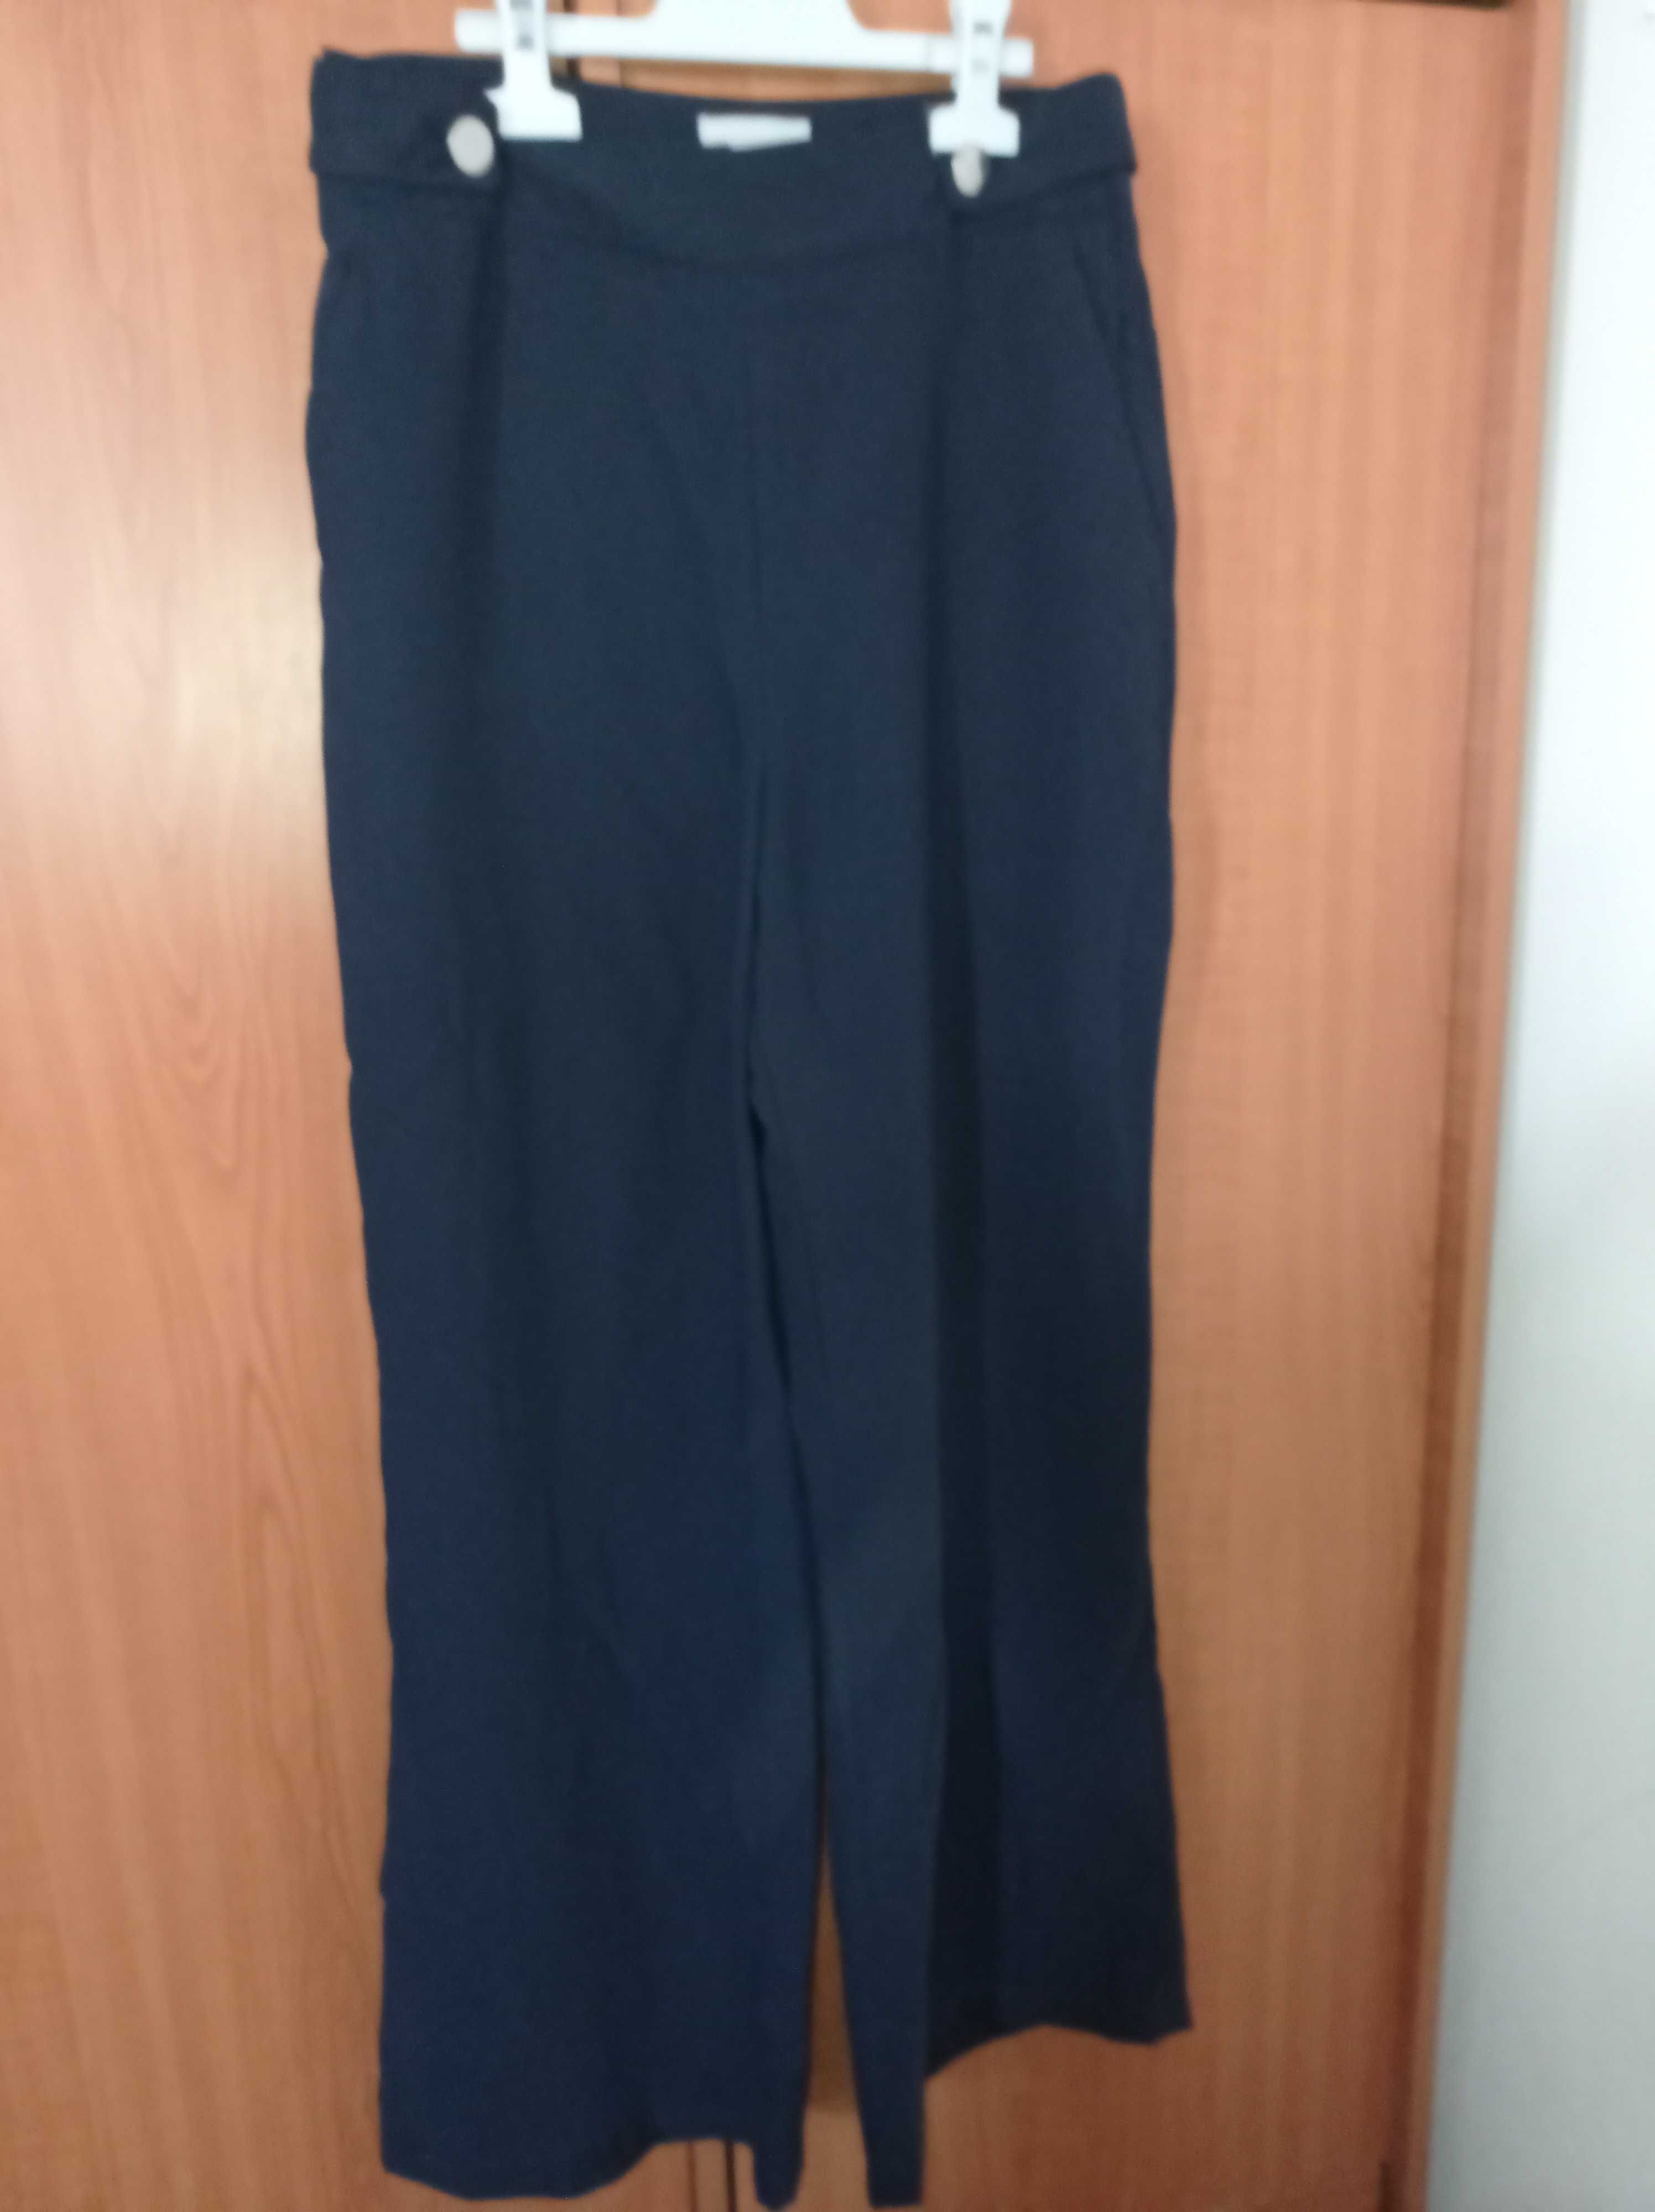 pantaloni H&M eleganti/office mas. M(38)